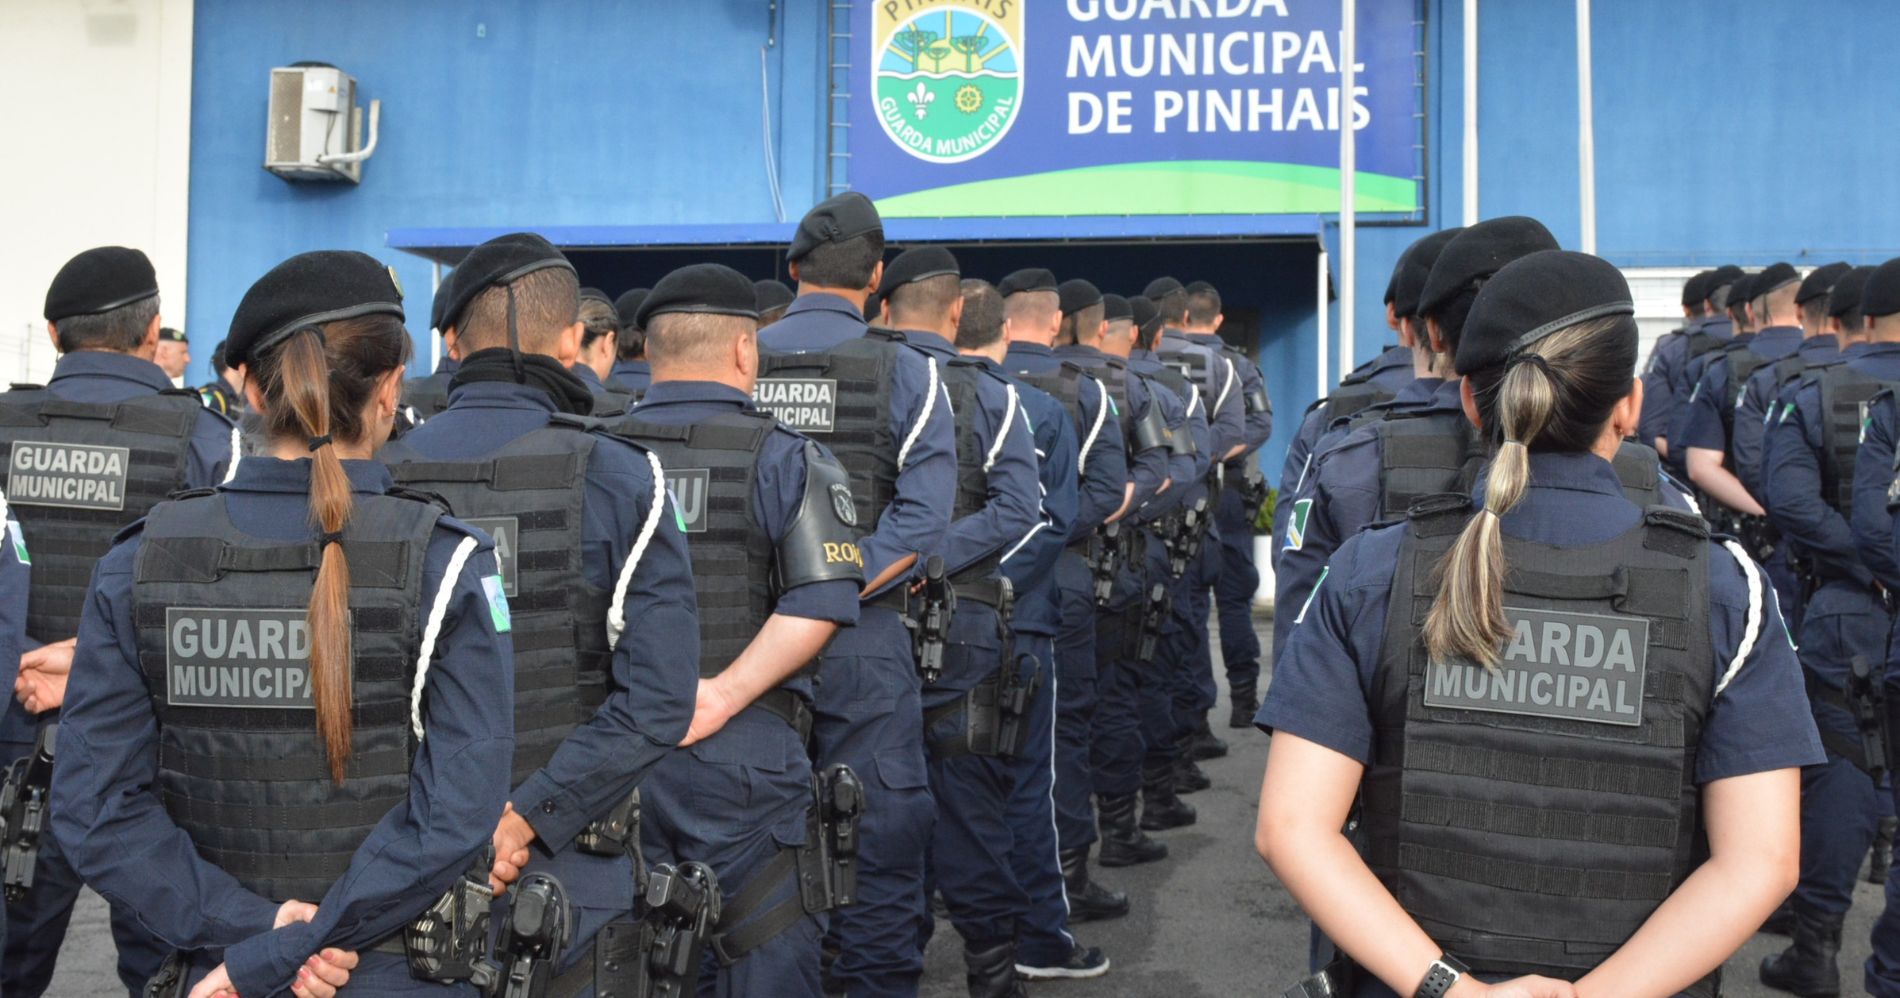 Prefeitura de Pinhais nomeia 32 novos guardas municipais